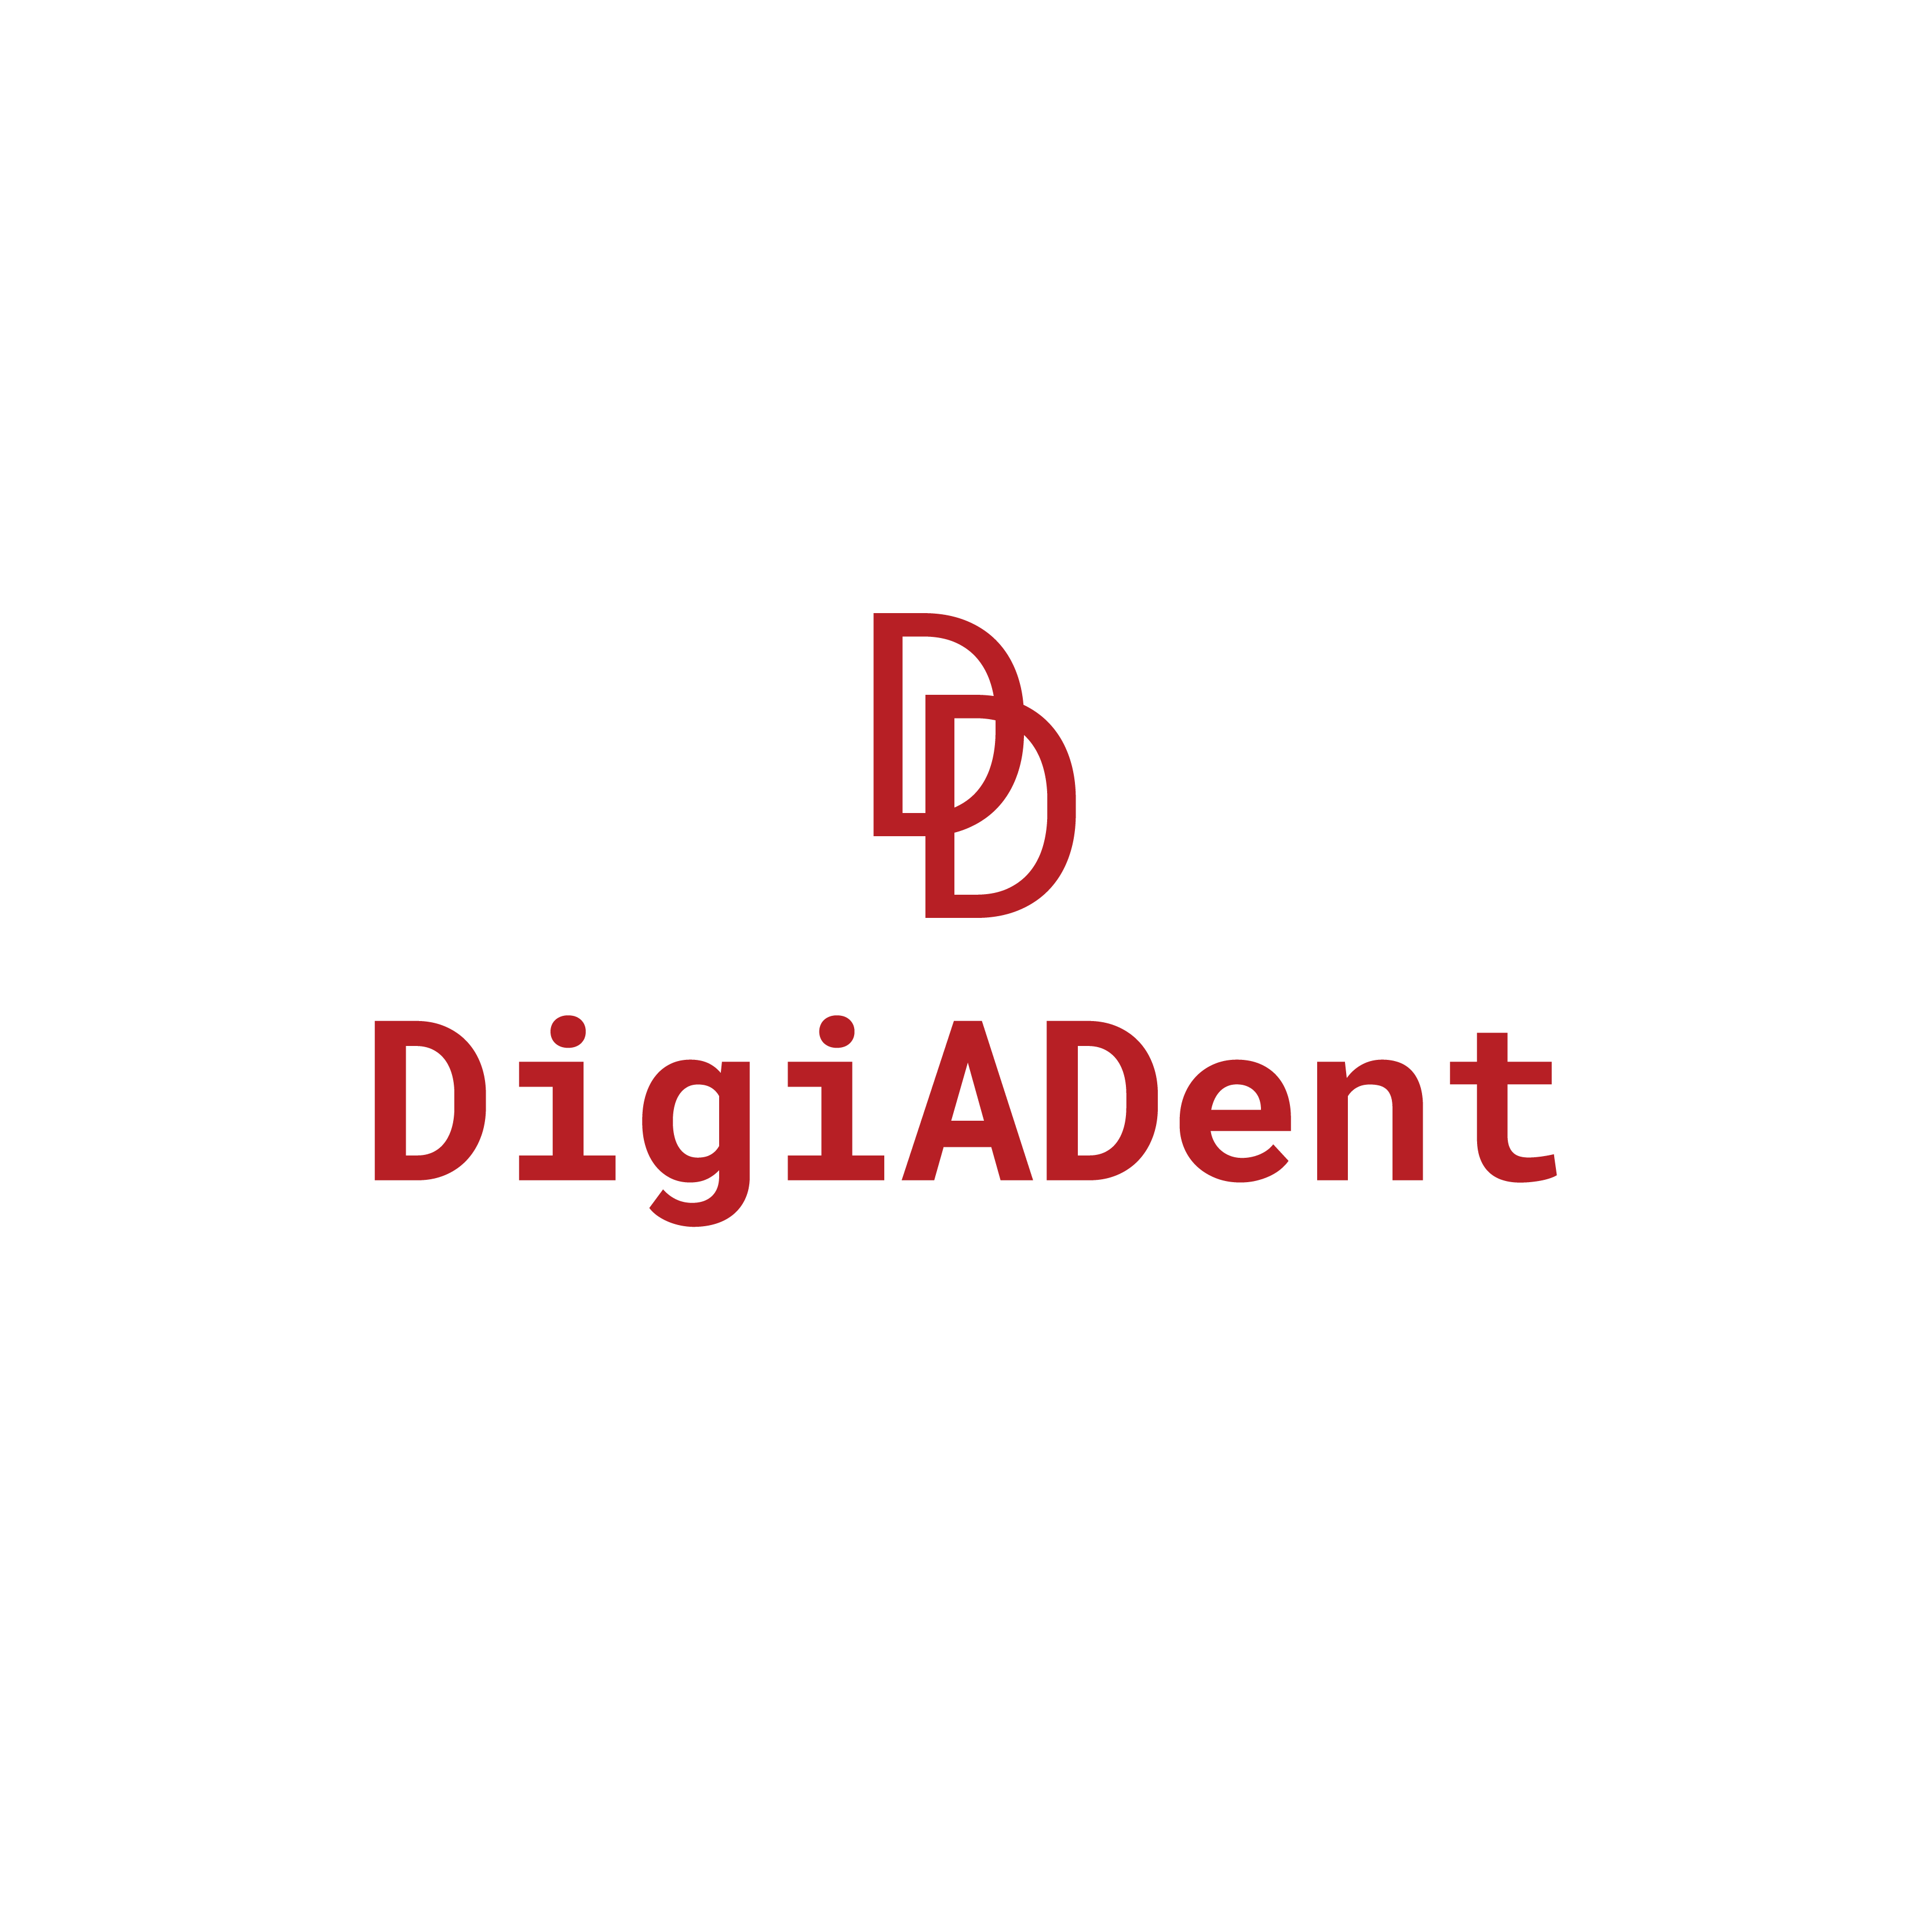 DigiAdent